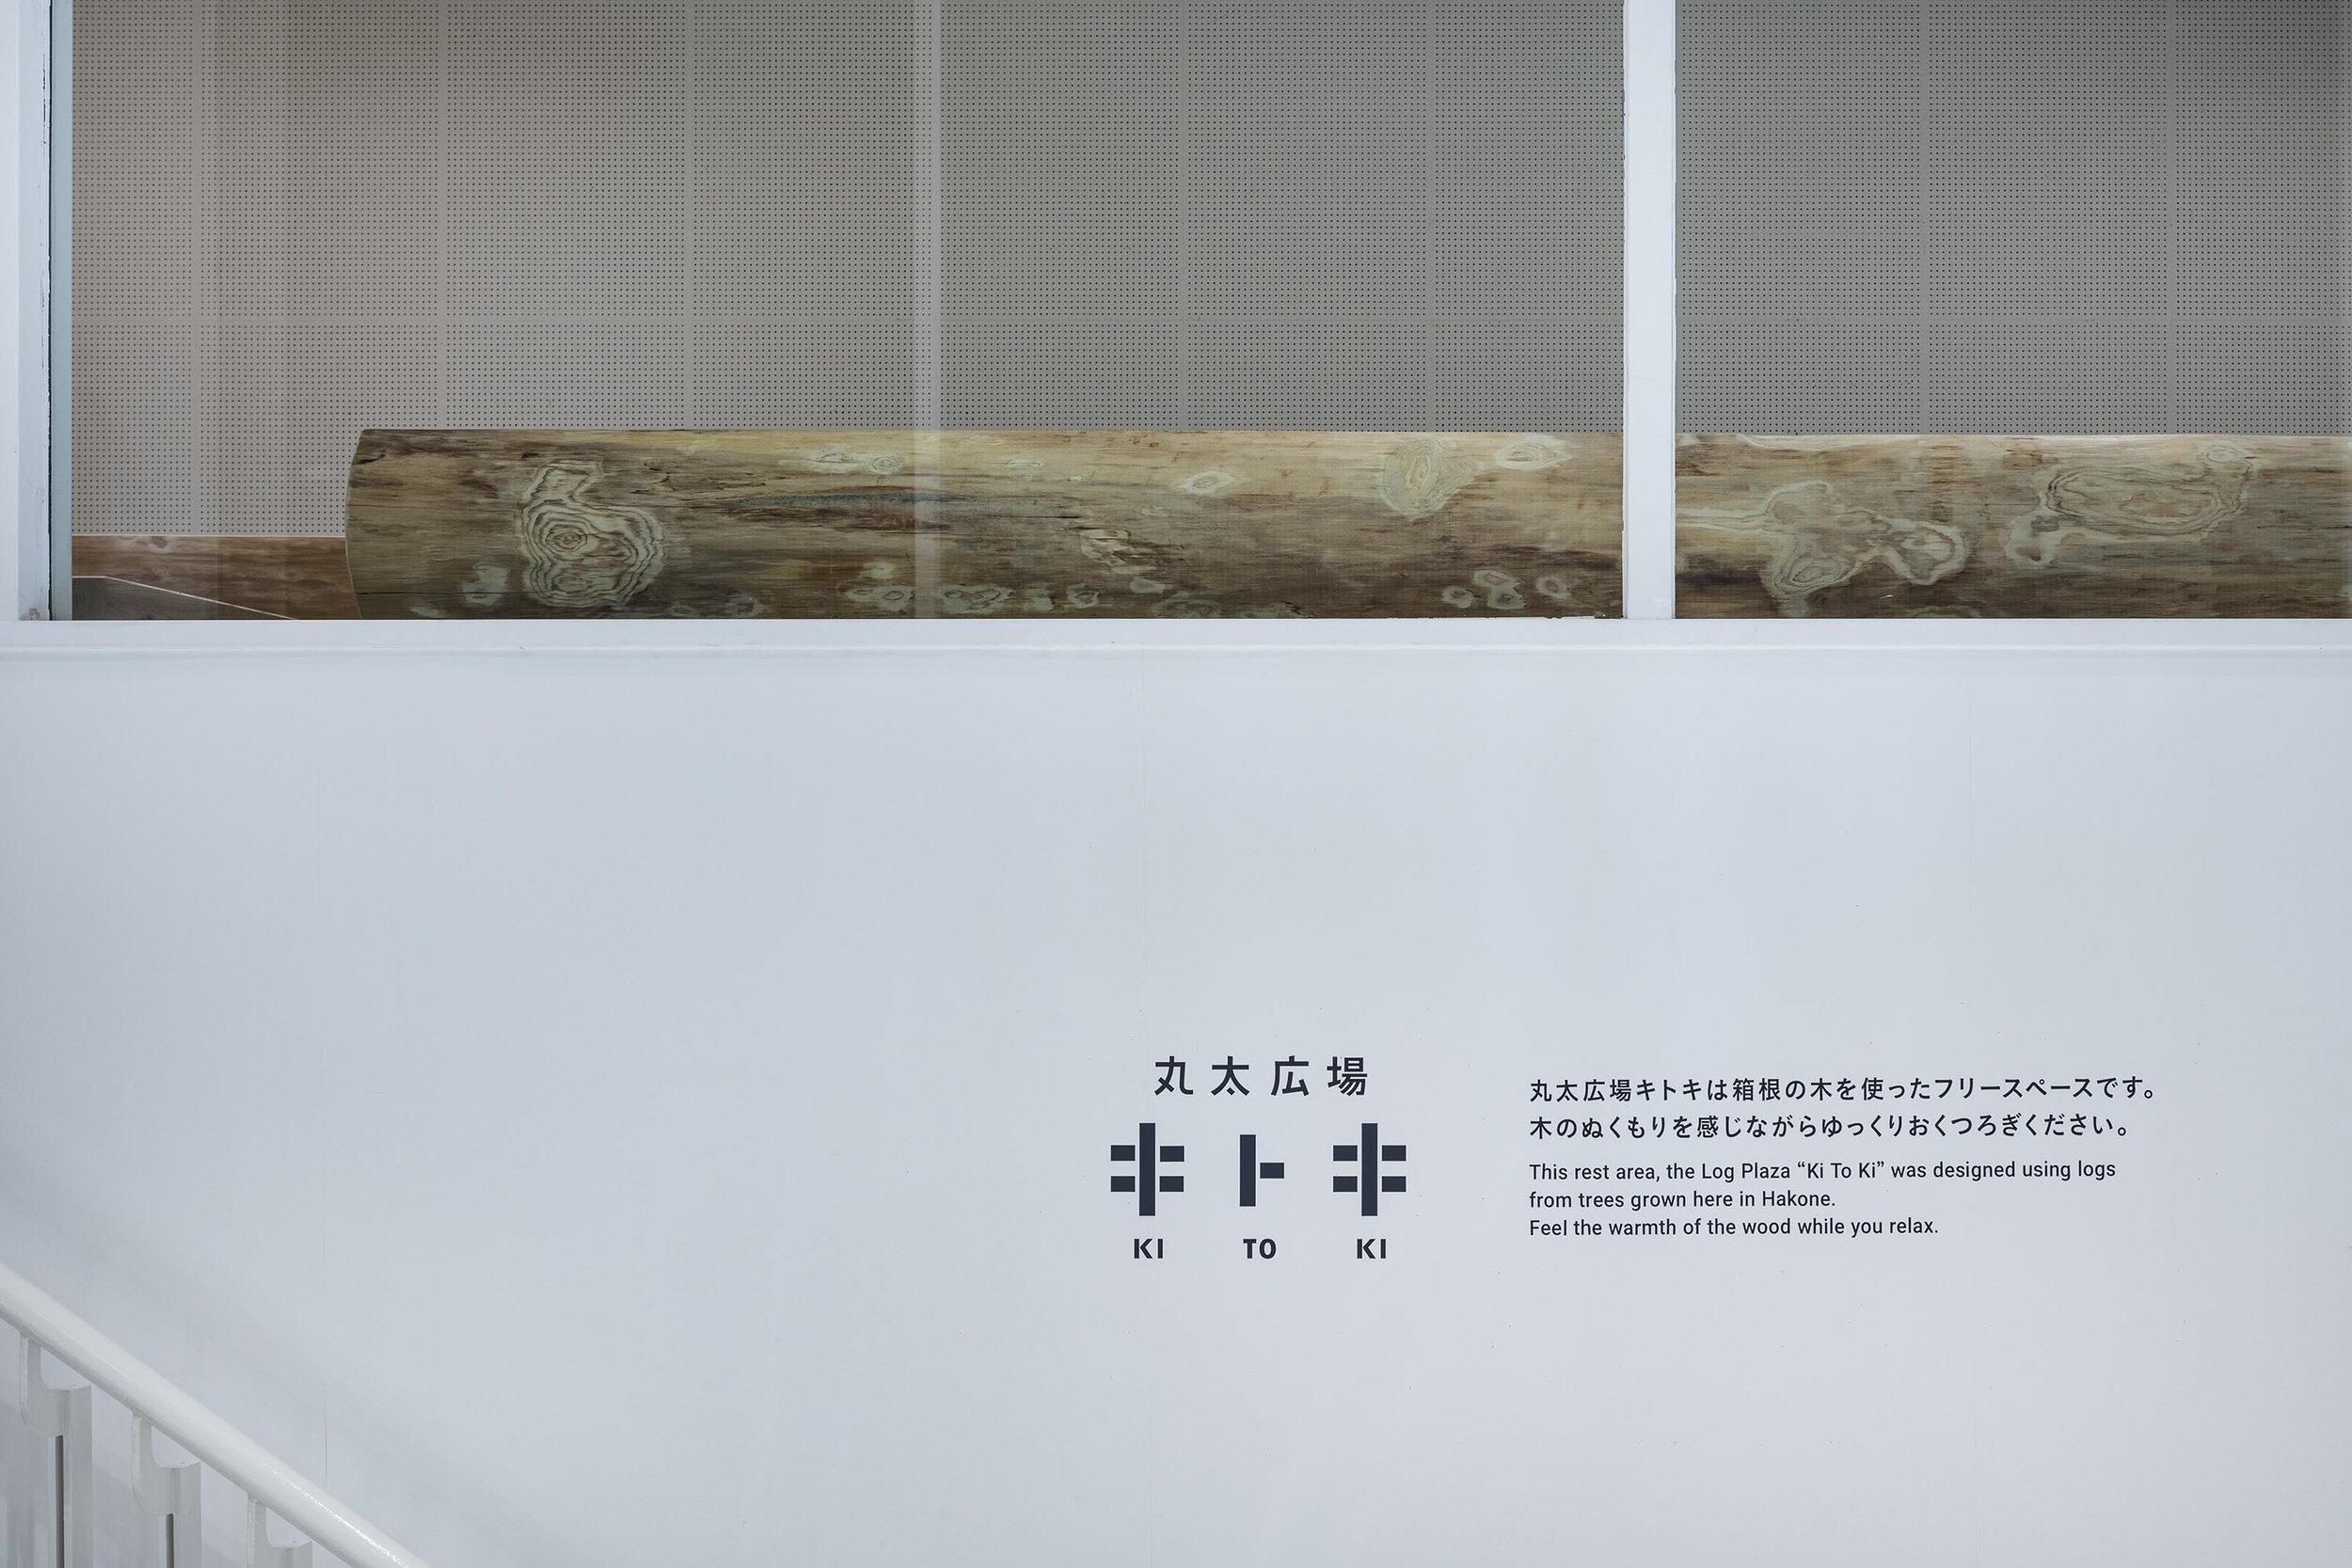  トラフ建築設計事務所 Torafu Architectsの鈴野浩一と禿真哉がインテリアデザインを手掛けた「丸太広場キトキ」のサイン 